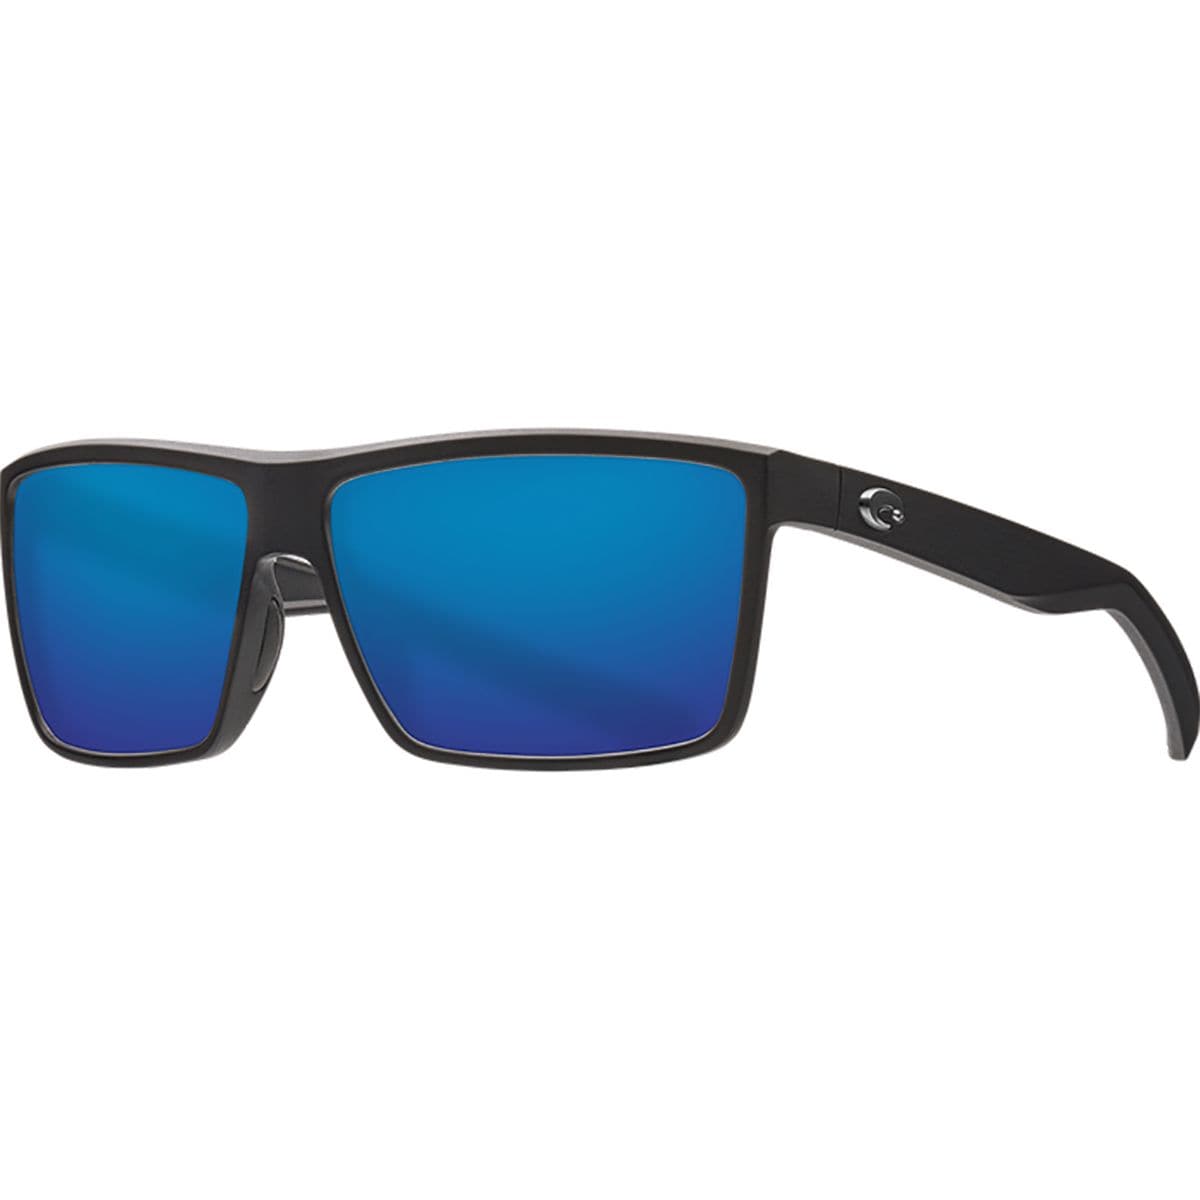 Pre-owned Costa Del Mar Costa Rinconcito 580g Polarized Sunglasses In Matte Black Frame/blue Mirror